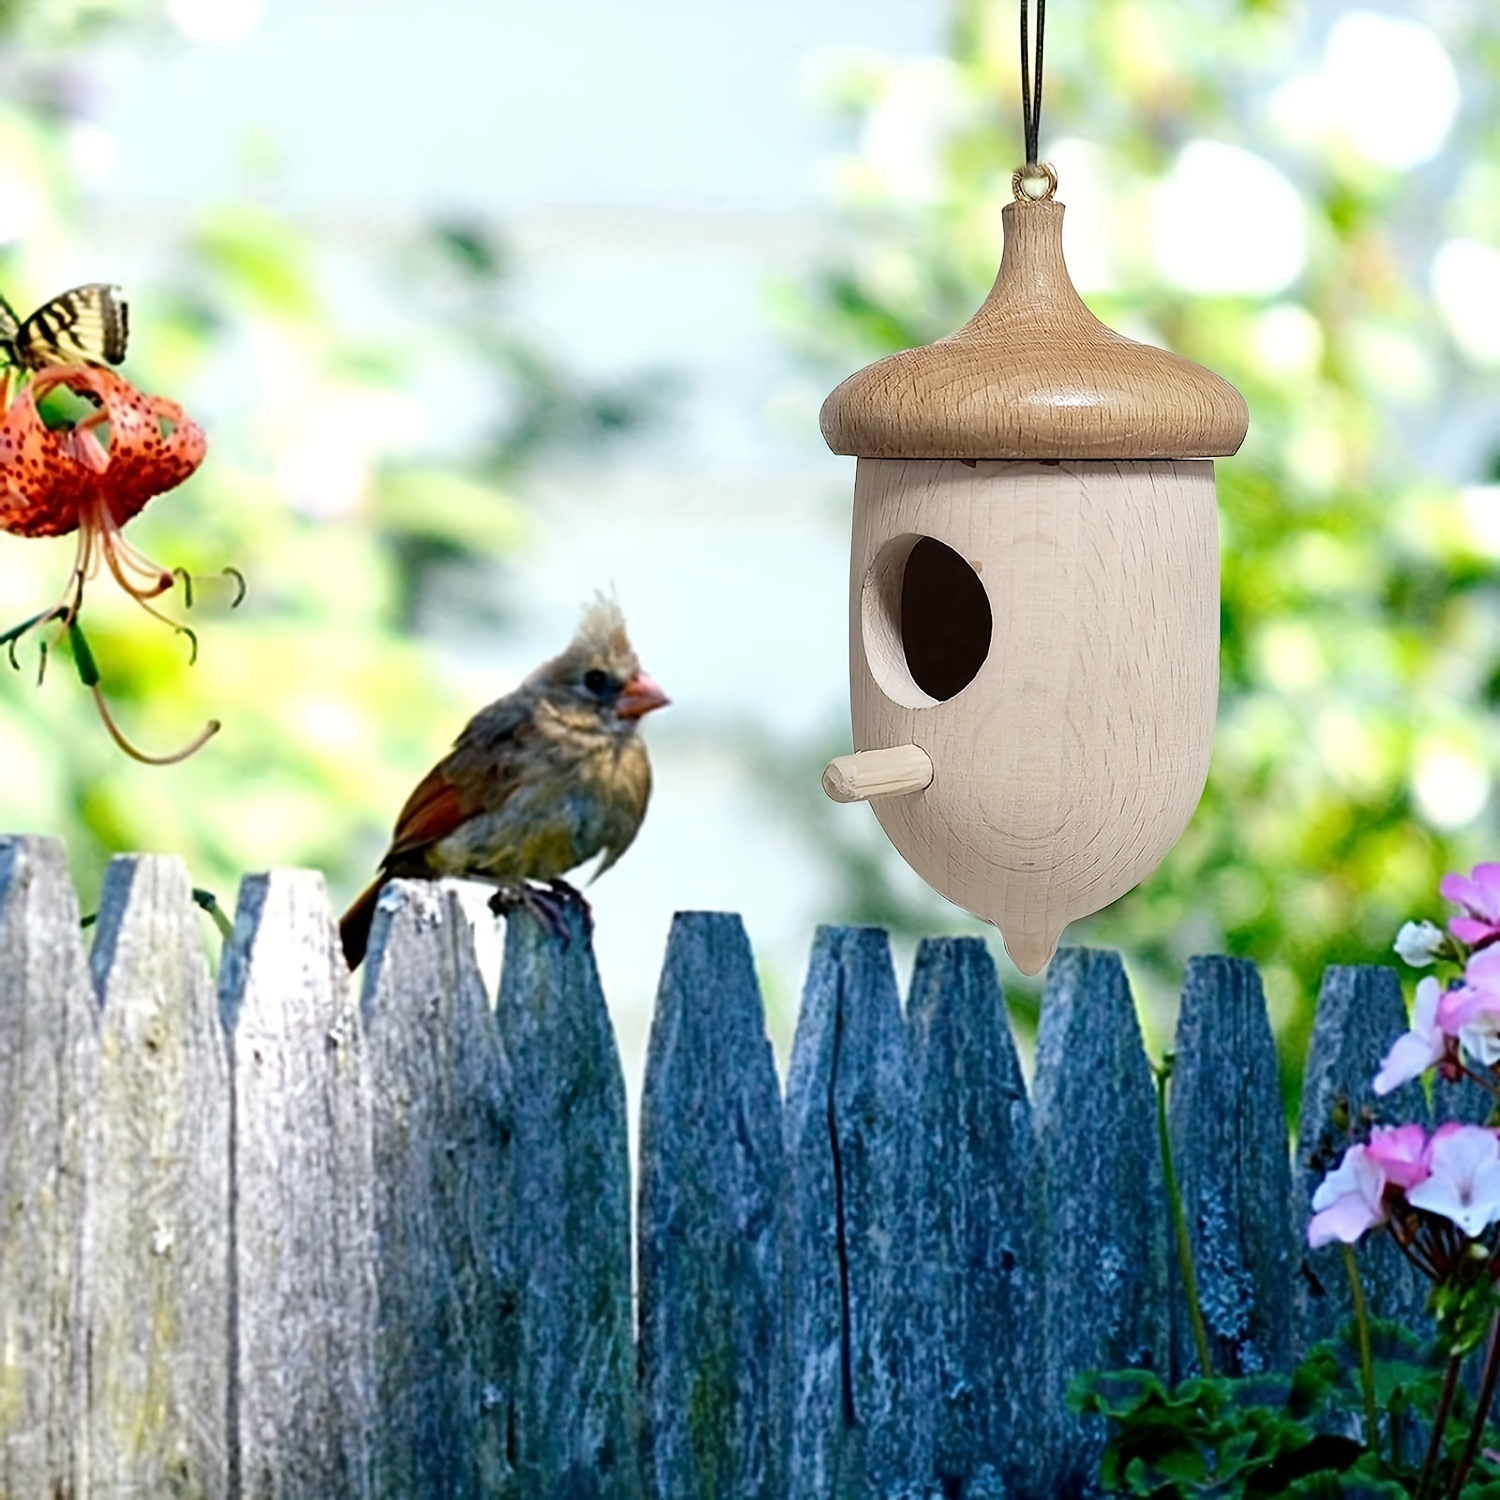 Comprar Adornos decorativos de pájaros acrílicos en adornos de ramas Serie  de grupos de pájaros o decoraciones para el hogar y la Oficina 5 estilos